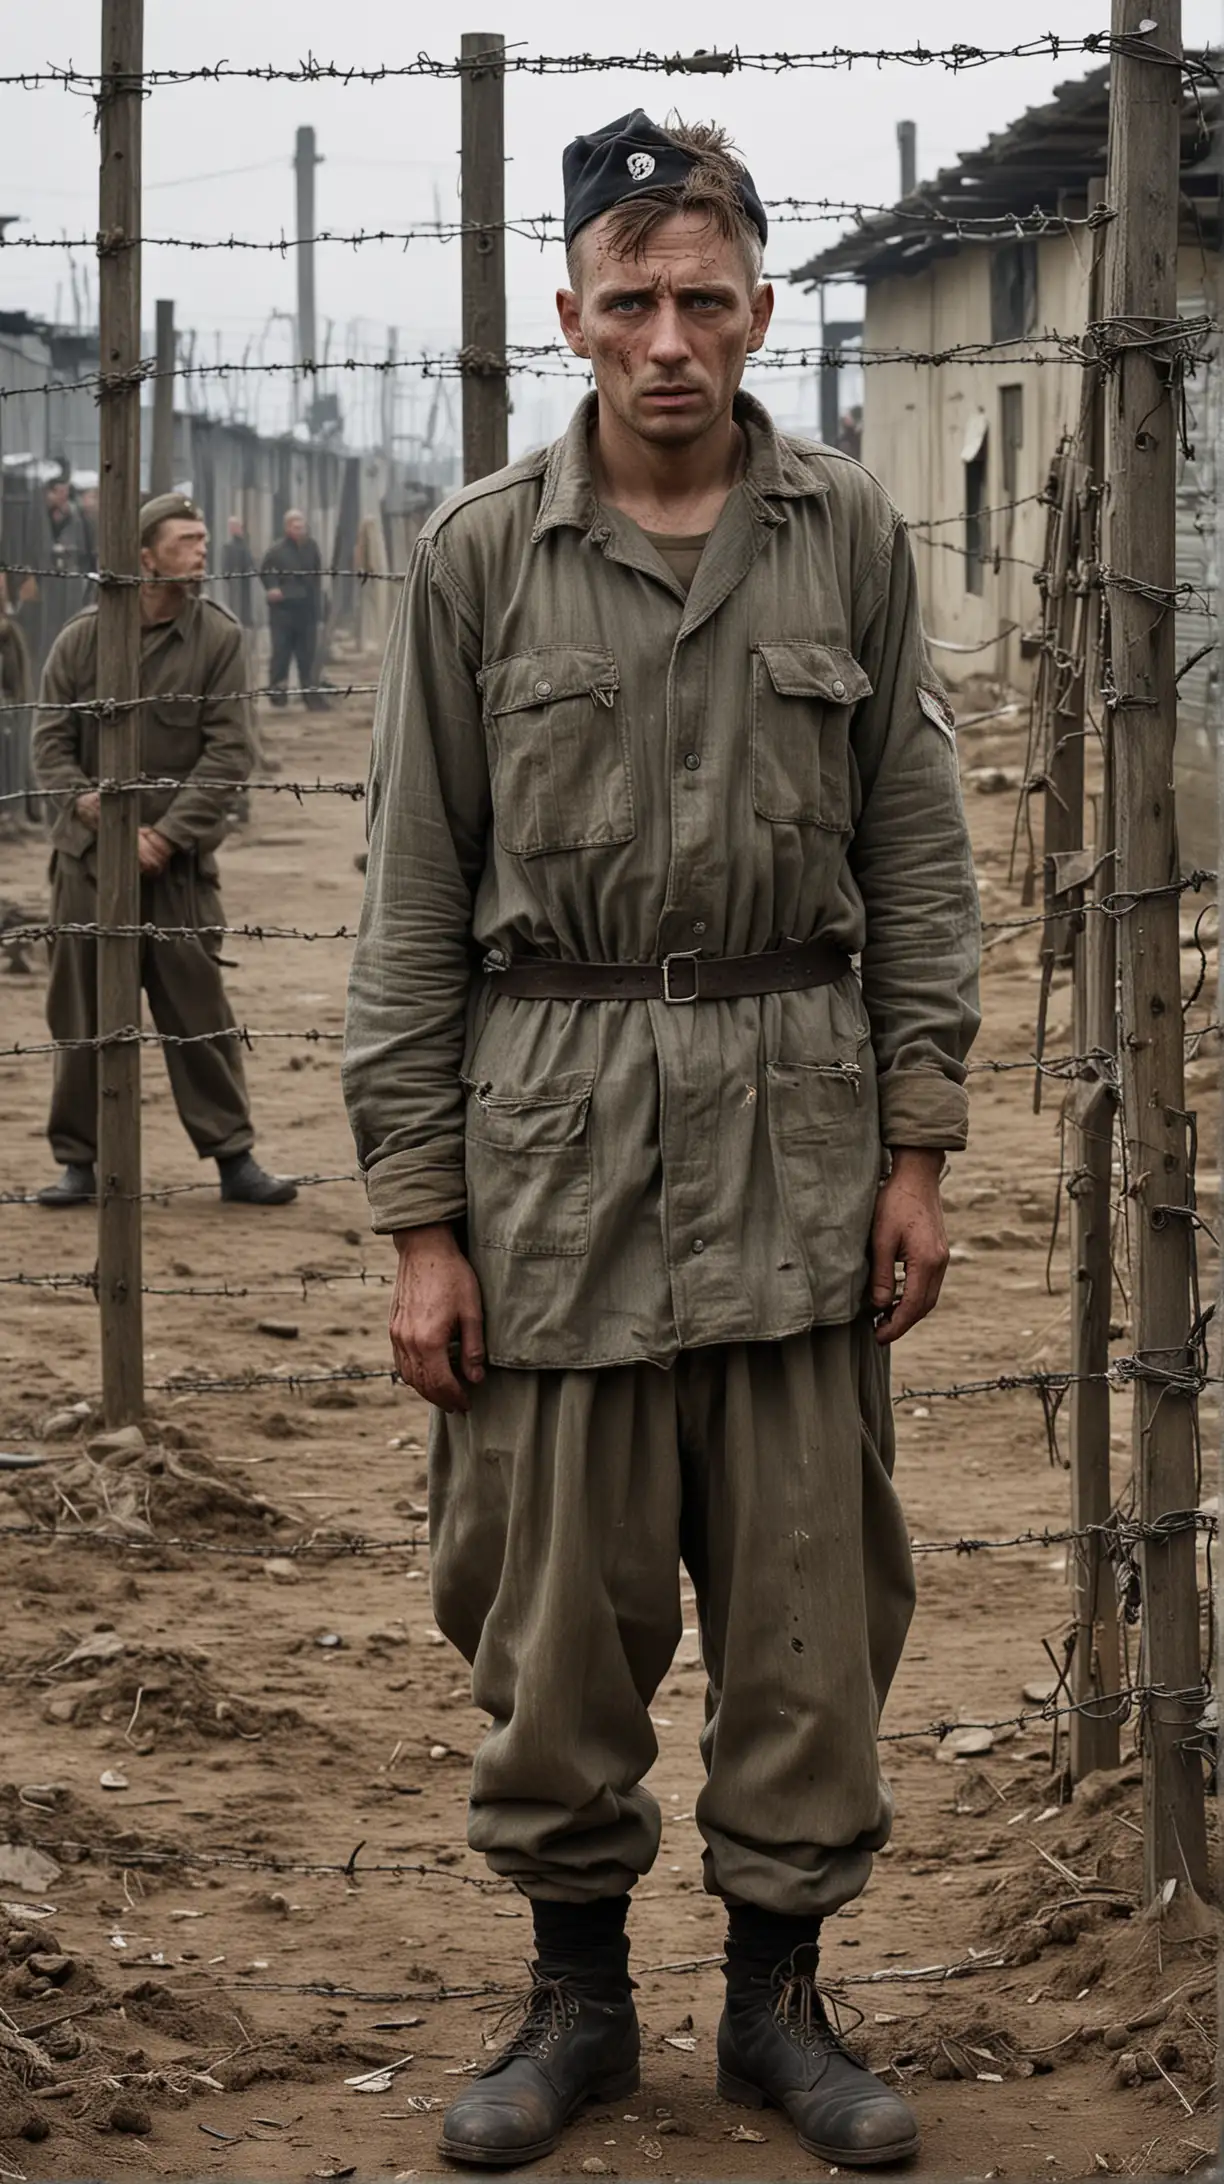 World War II German Prisoner in Worn Uniform Amidst Barbed Wire